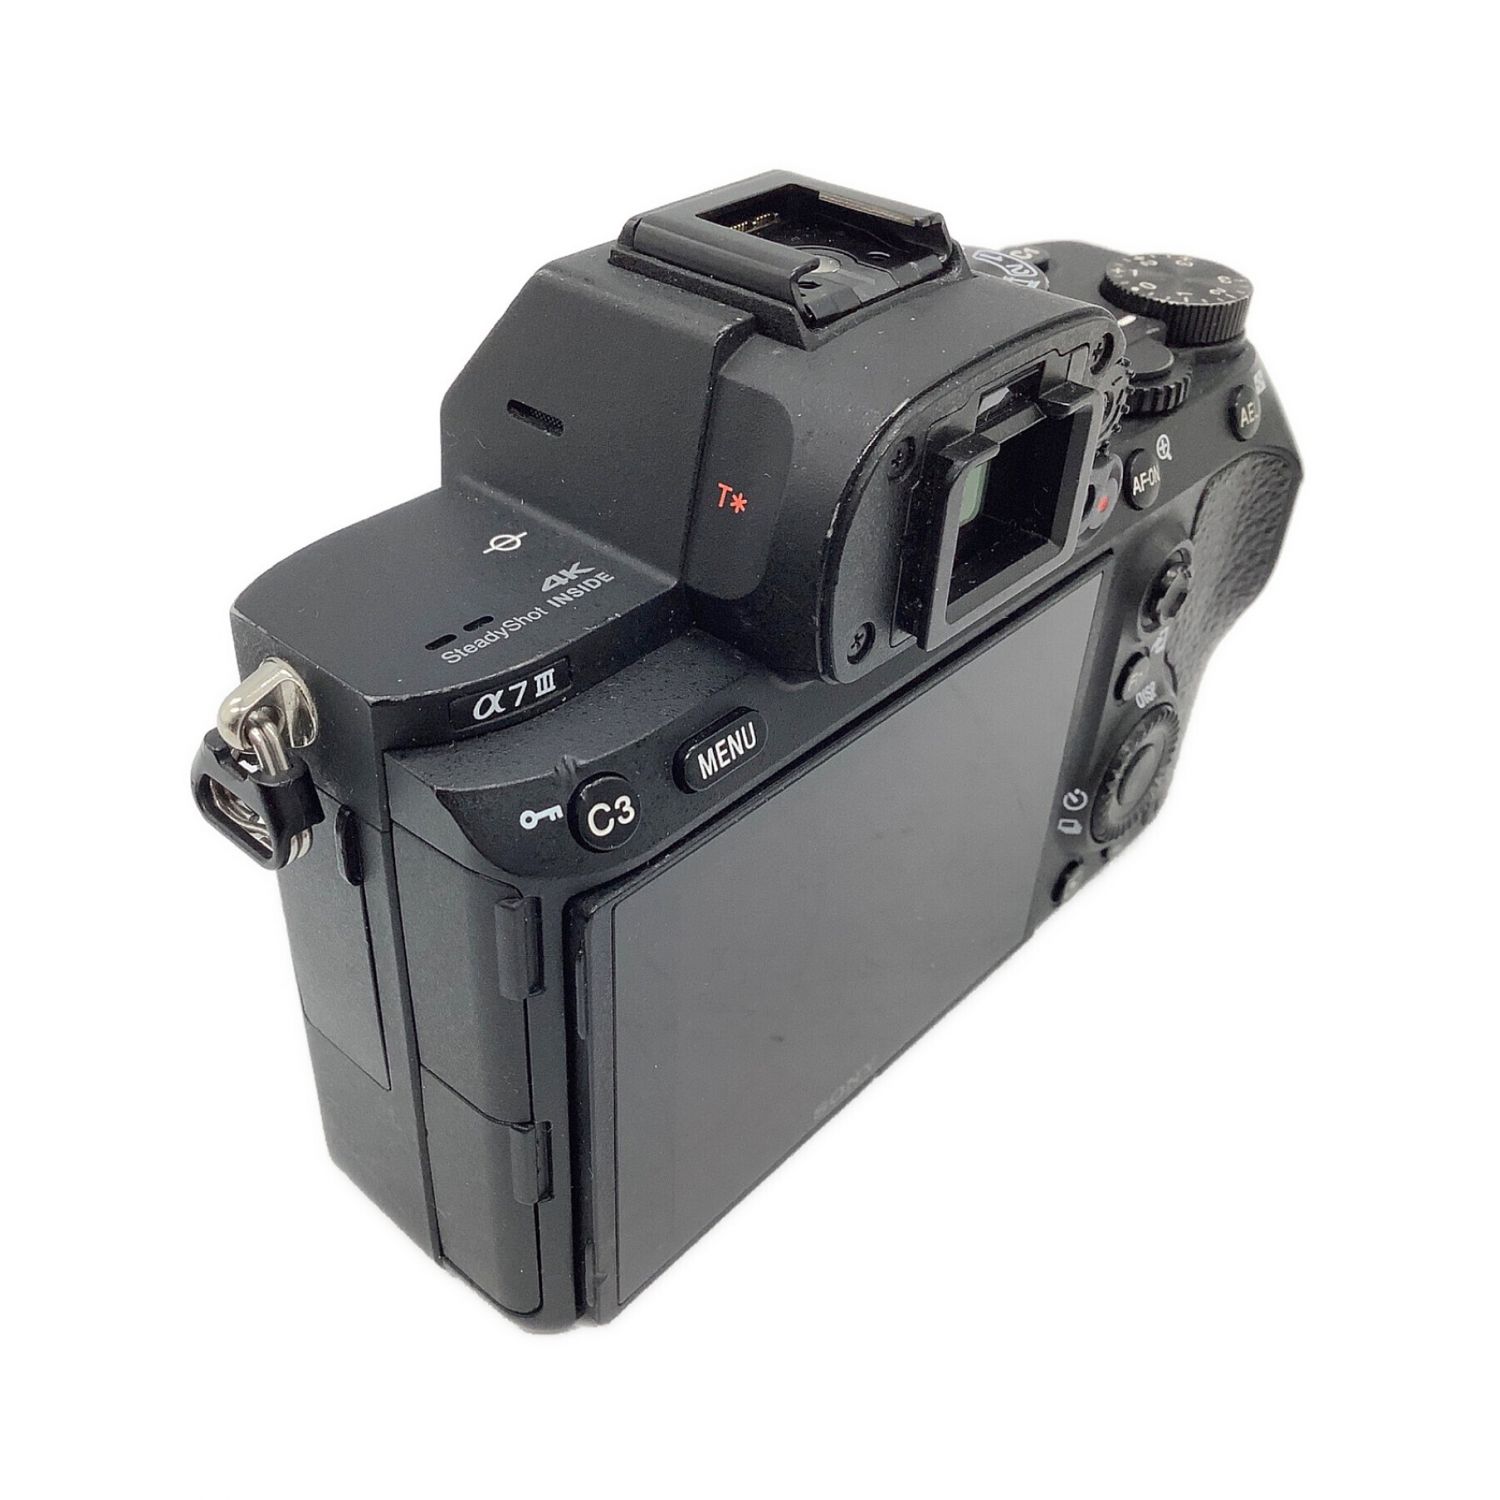 SONY ミラーレス一眼カメラ ILCE-7M3 2530万画素 専用電池 SD 